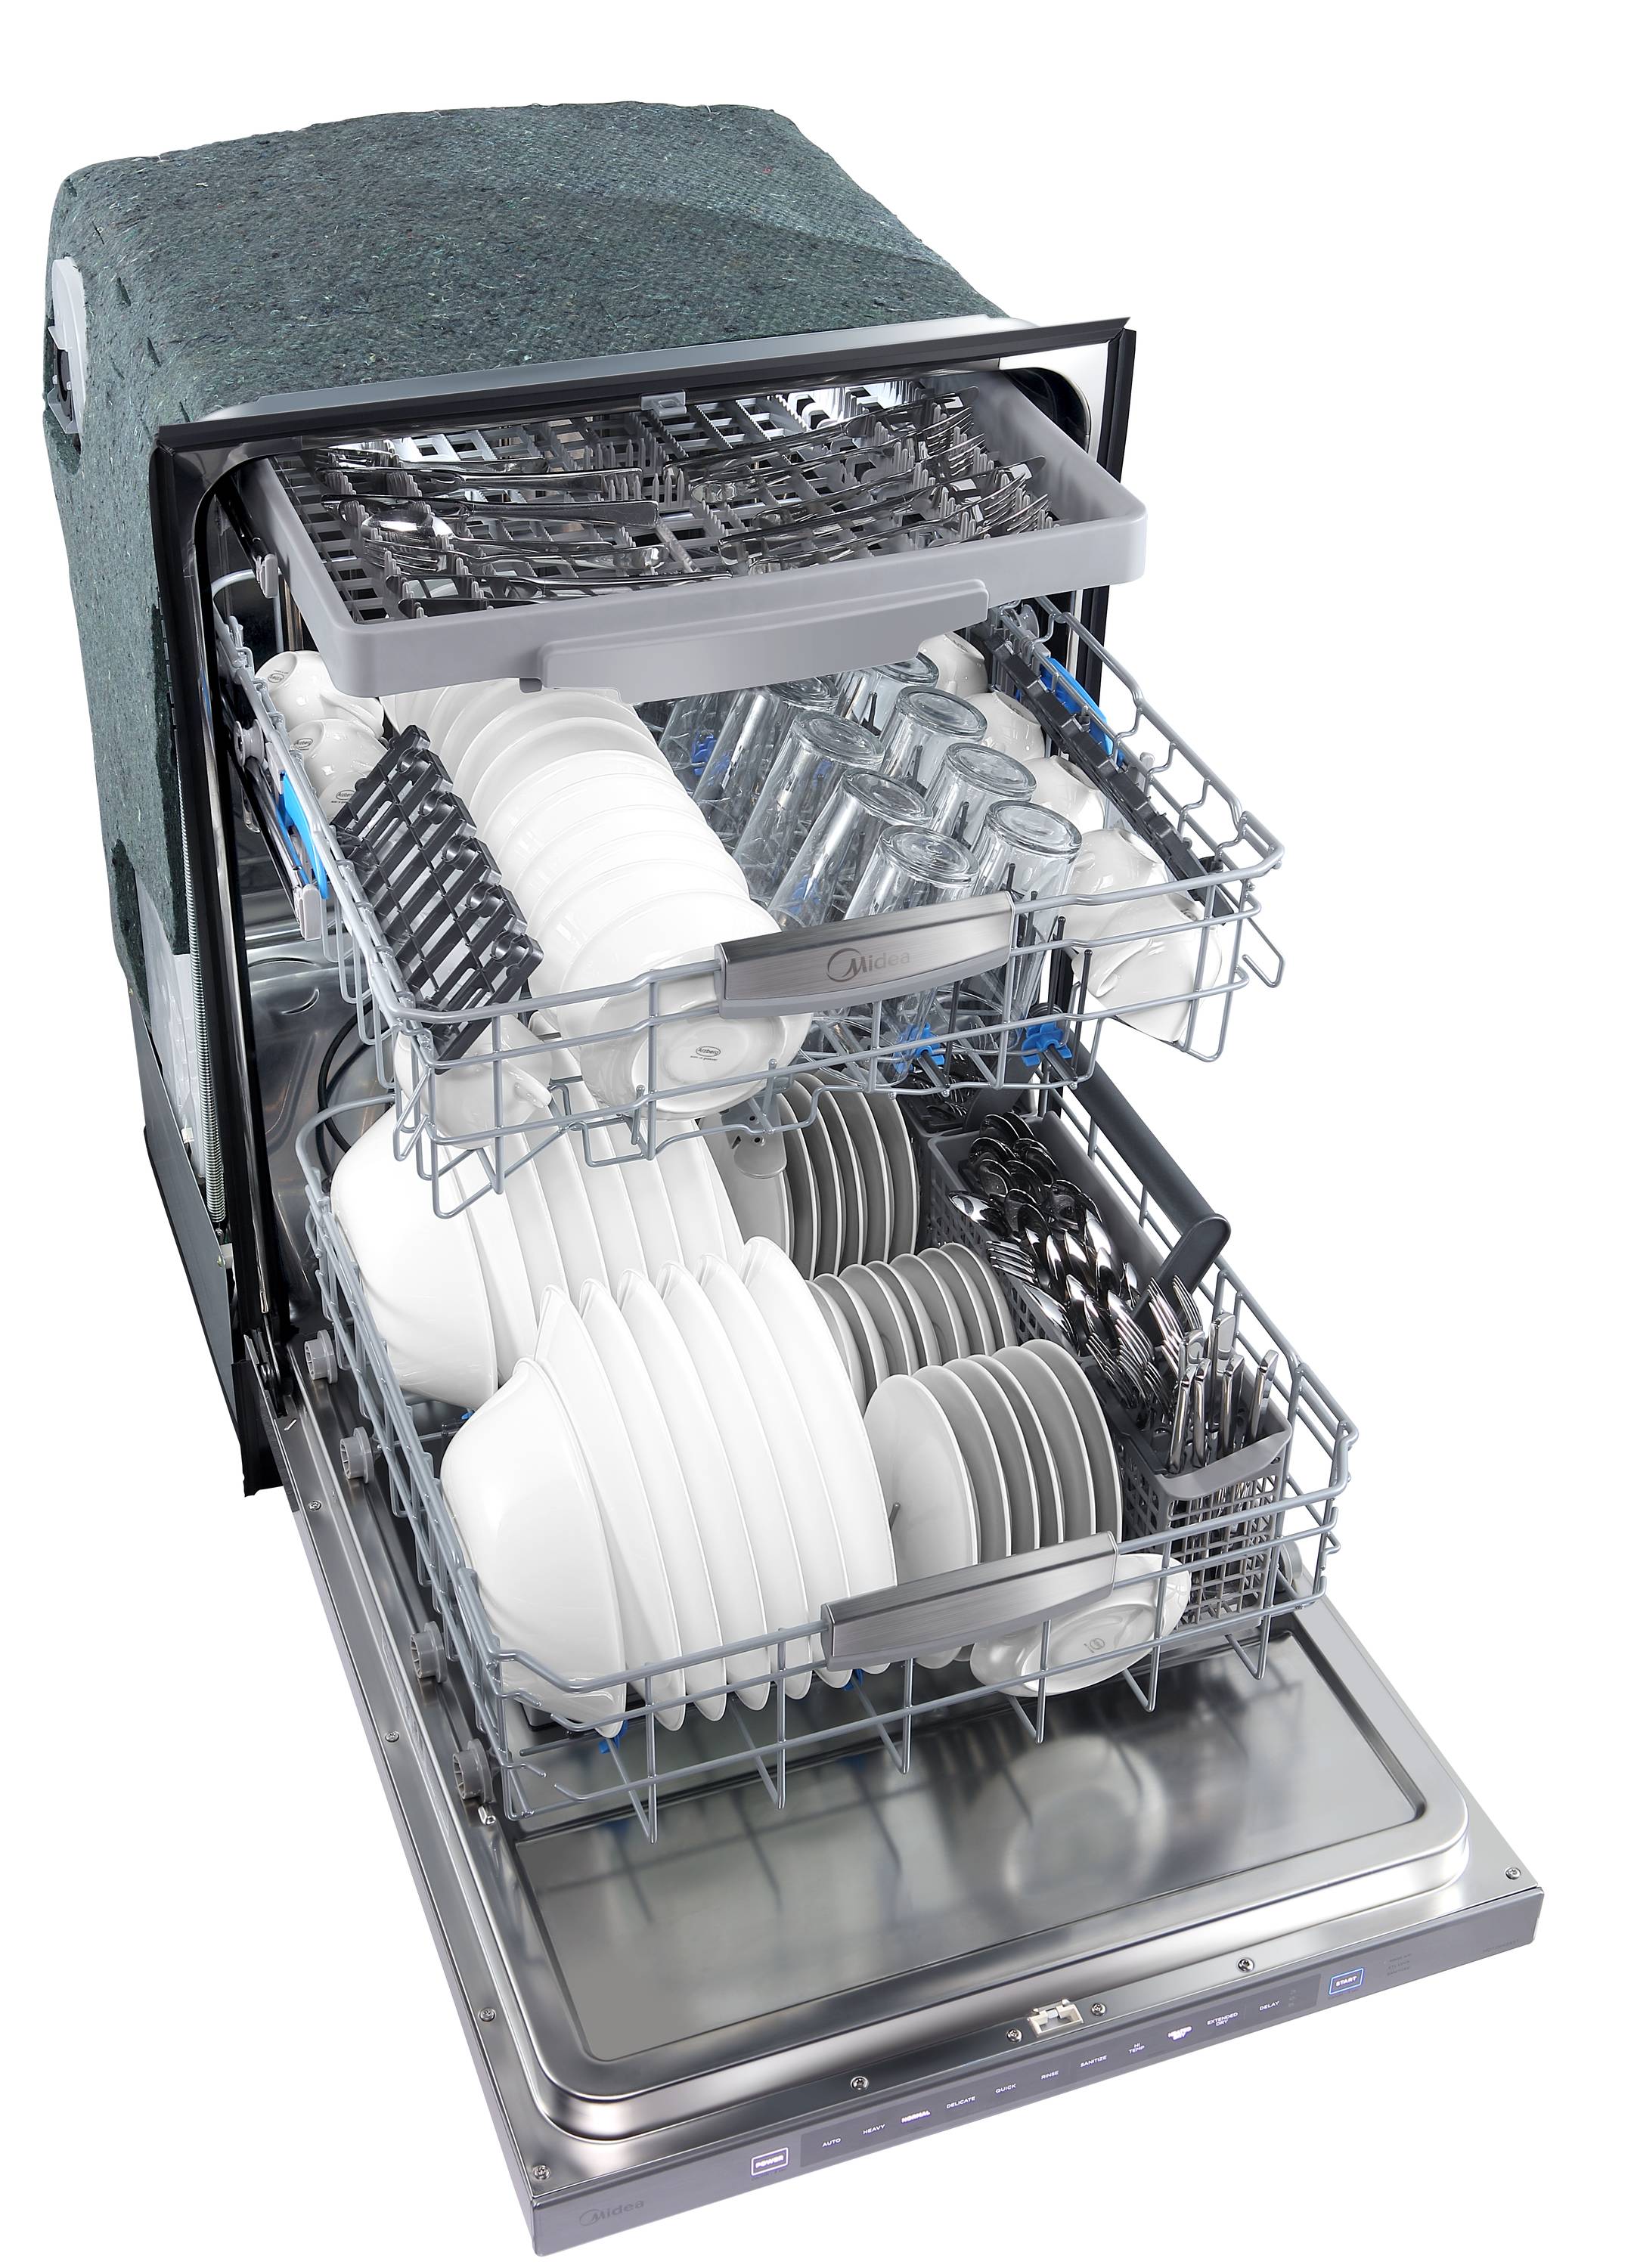 Third Rack Dishwashers, 3 Rack Dishwashers